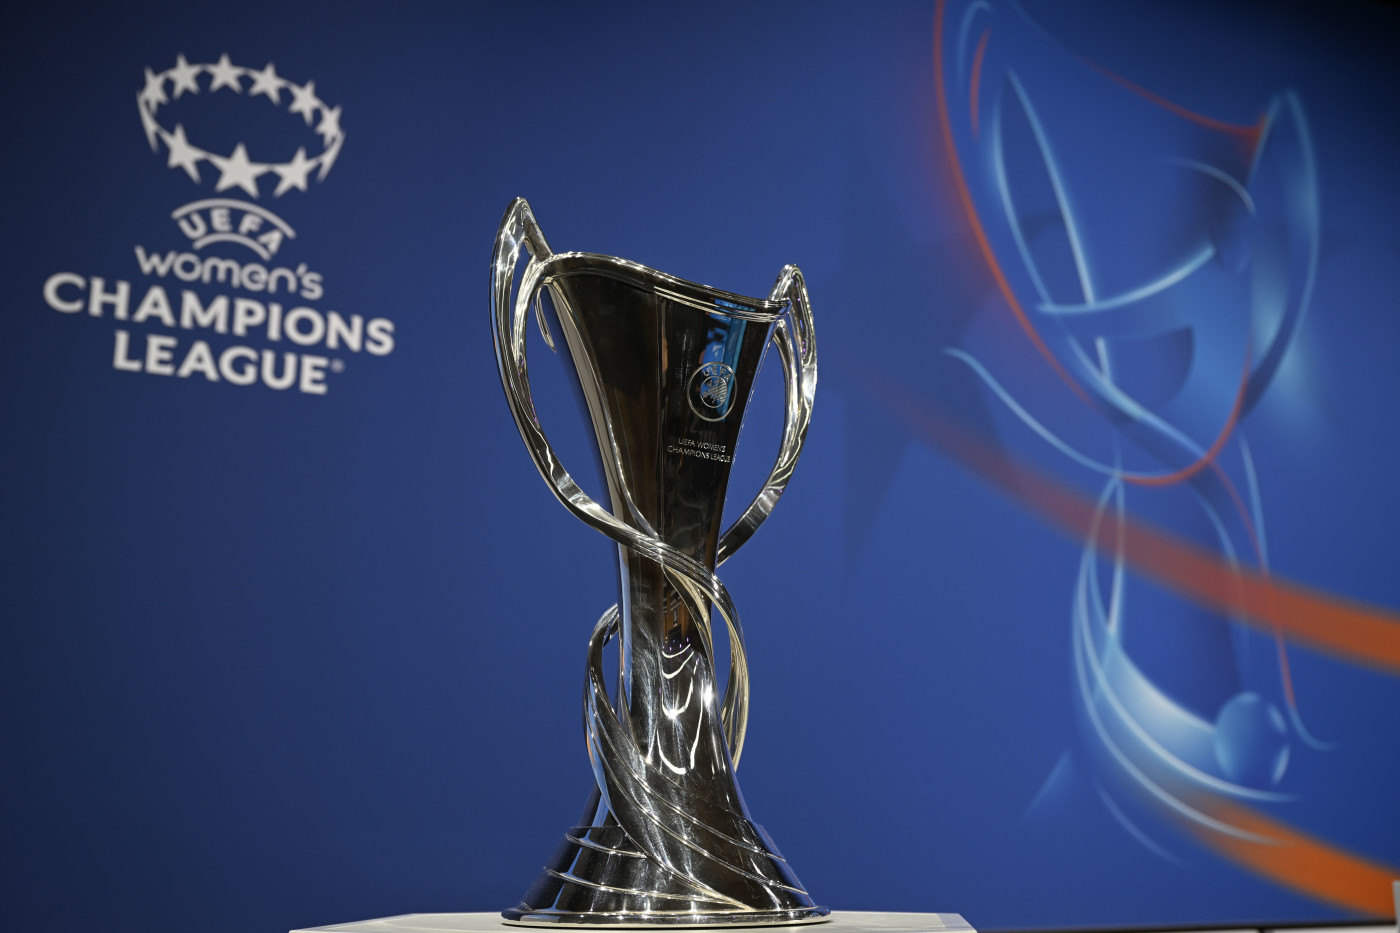 UEFA Women's Champions League 2022-23 Preview